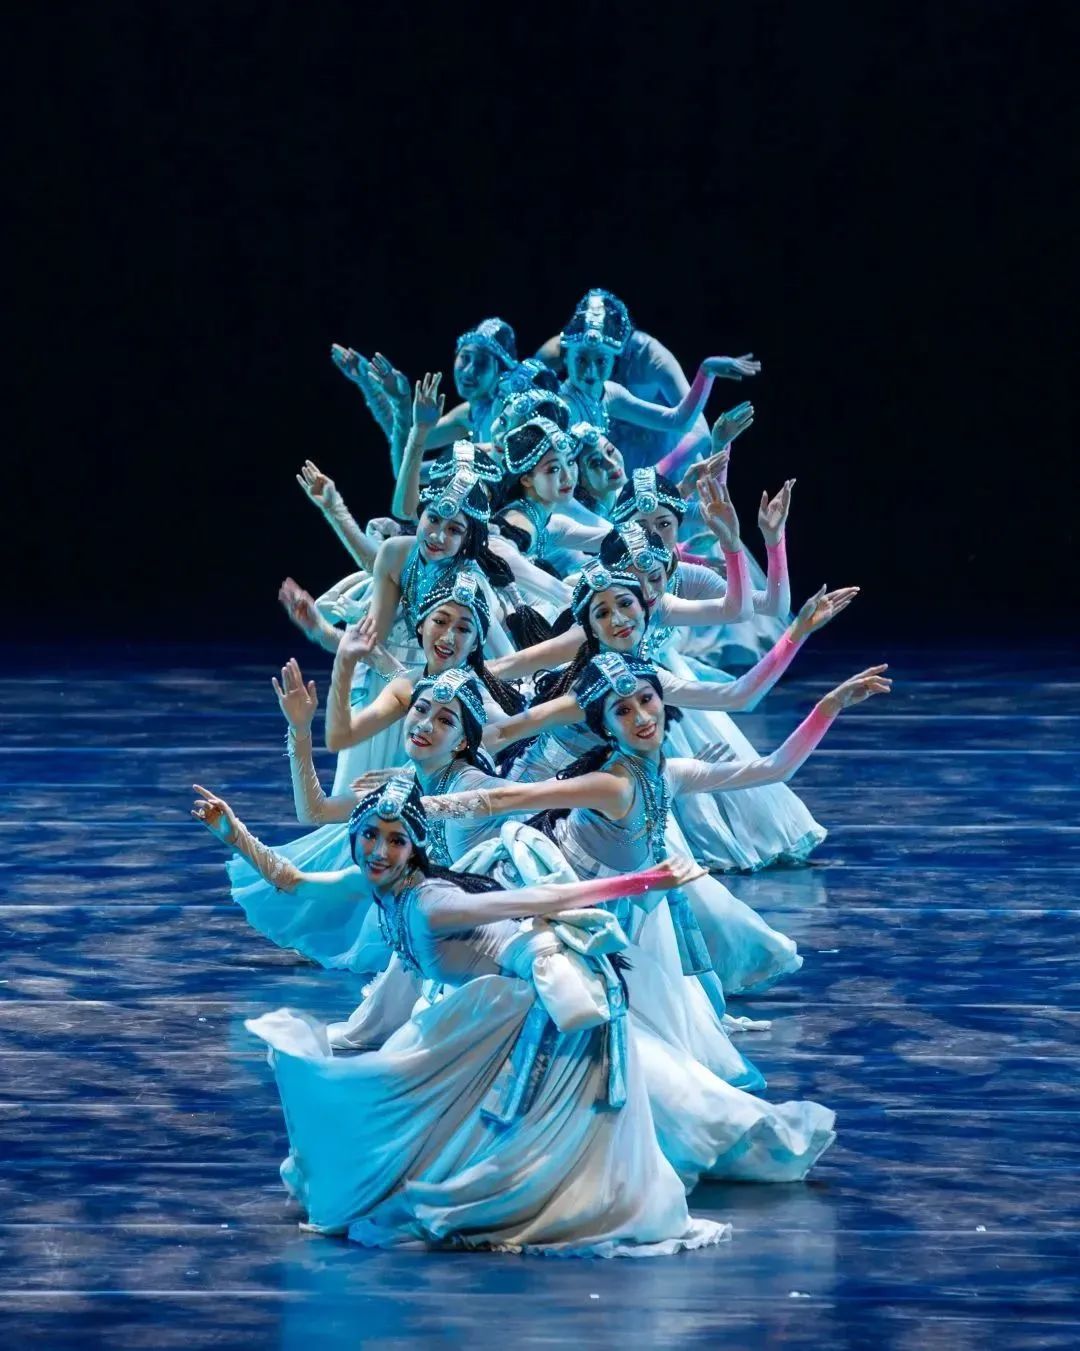 吉林省歌舞团参加首届“金鹤杯”舞蹈展演_吉林省歌舞团有限责任公司|吉林省歌舞团|省歌【官网】